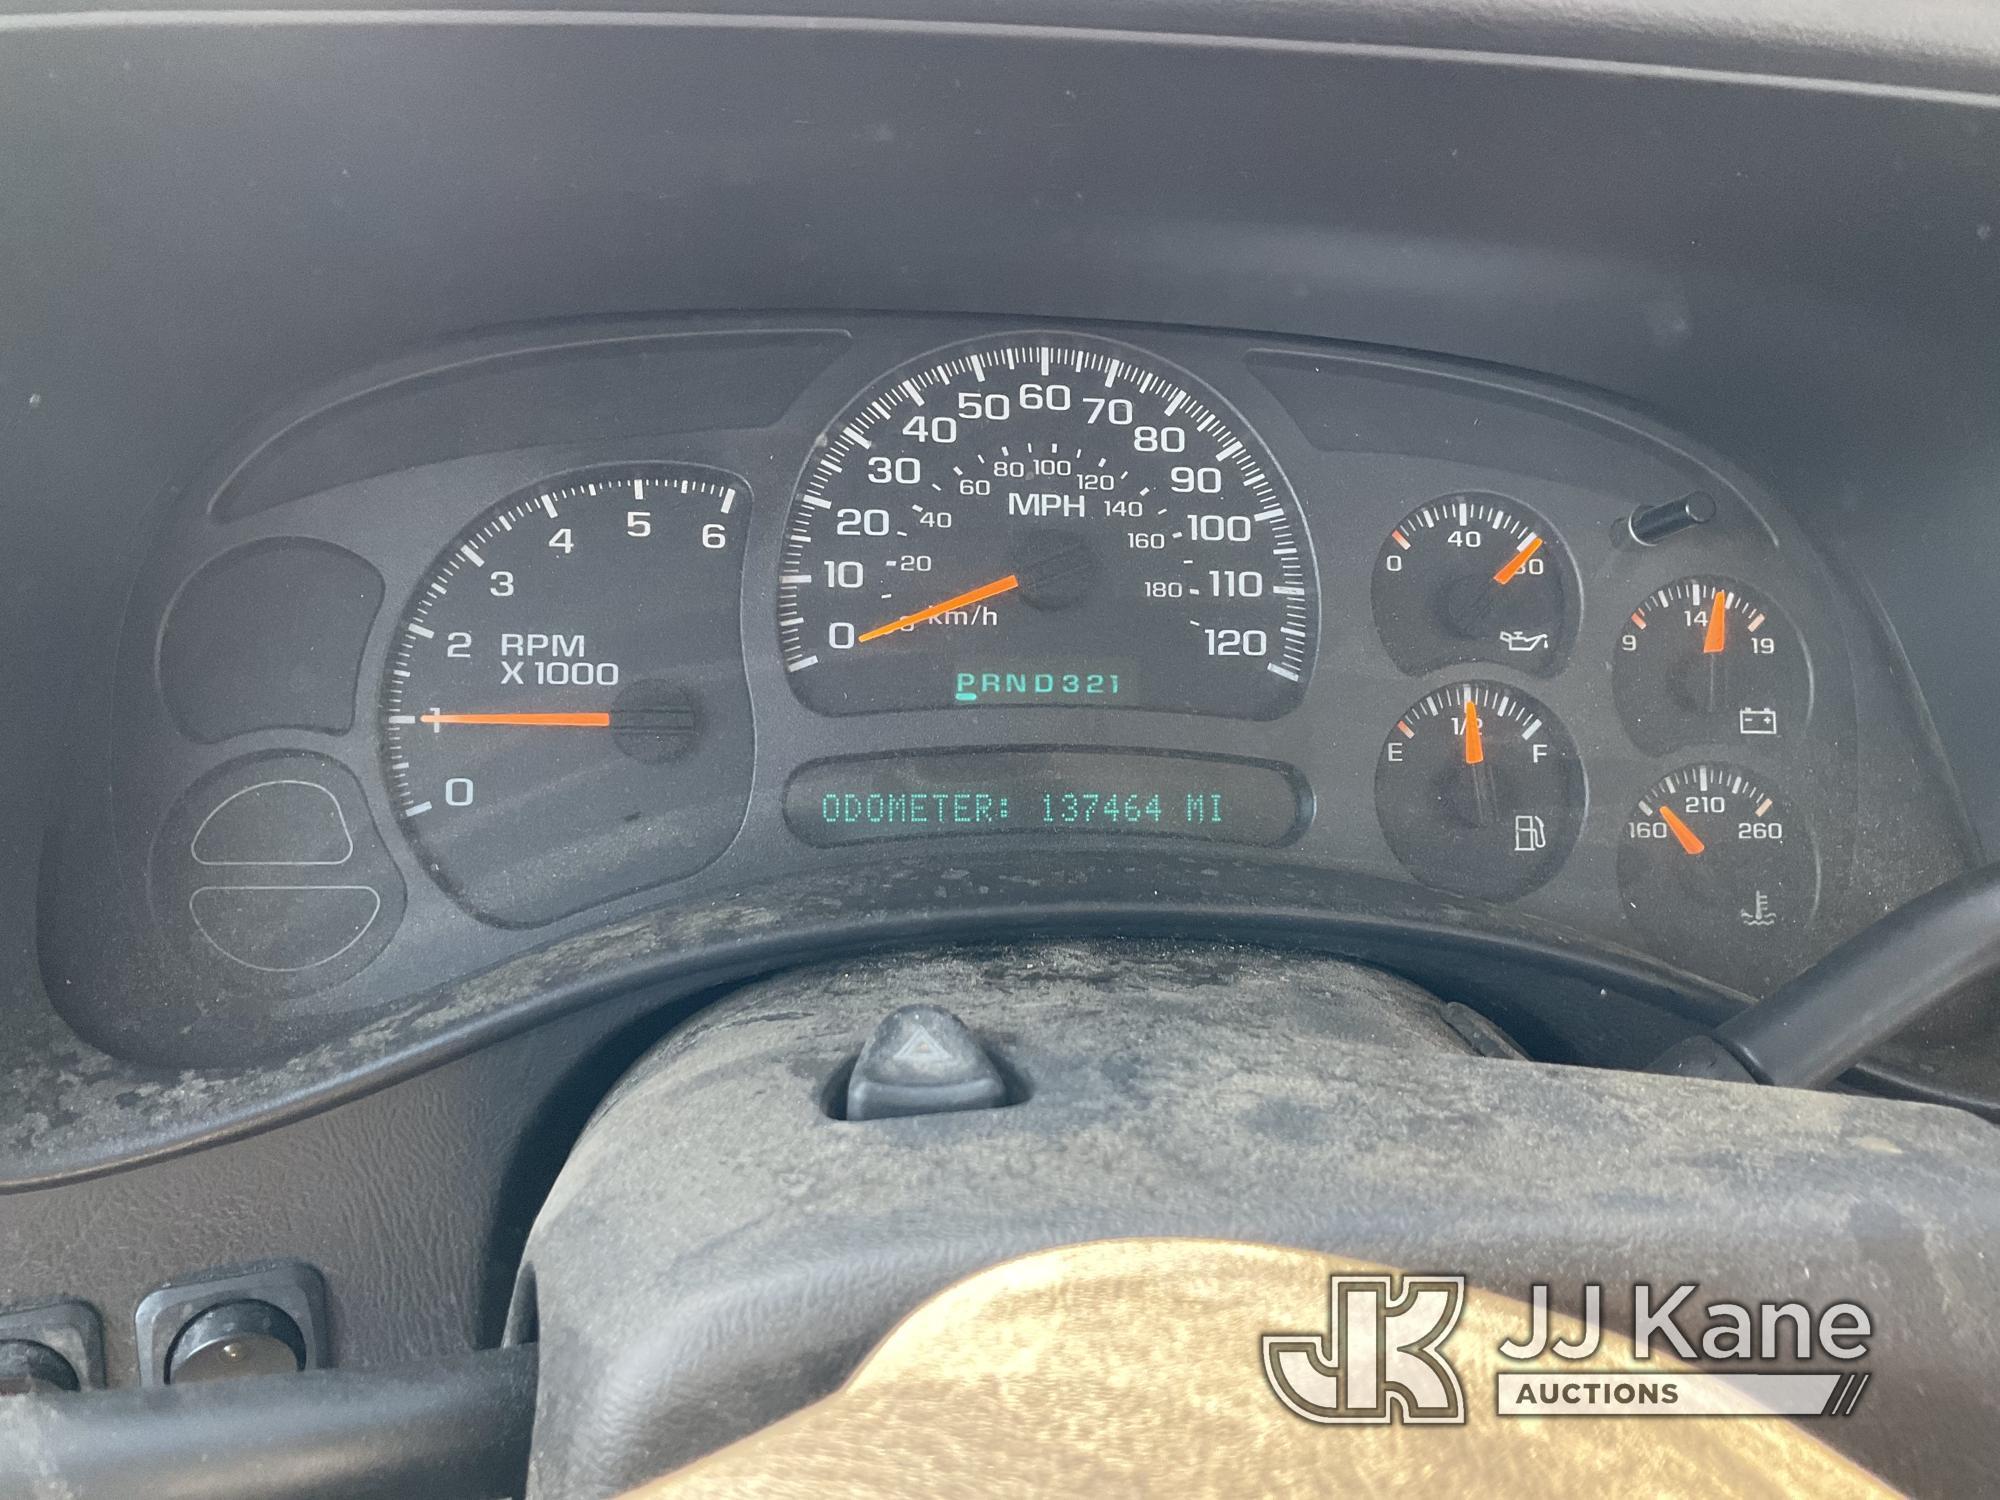 (Jurupa Valley, CA) 2003 Chevrolet Silverado 1500 Extended-Cab Pickup Truck Runs & Moves, Lifters Kn